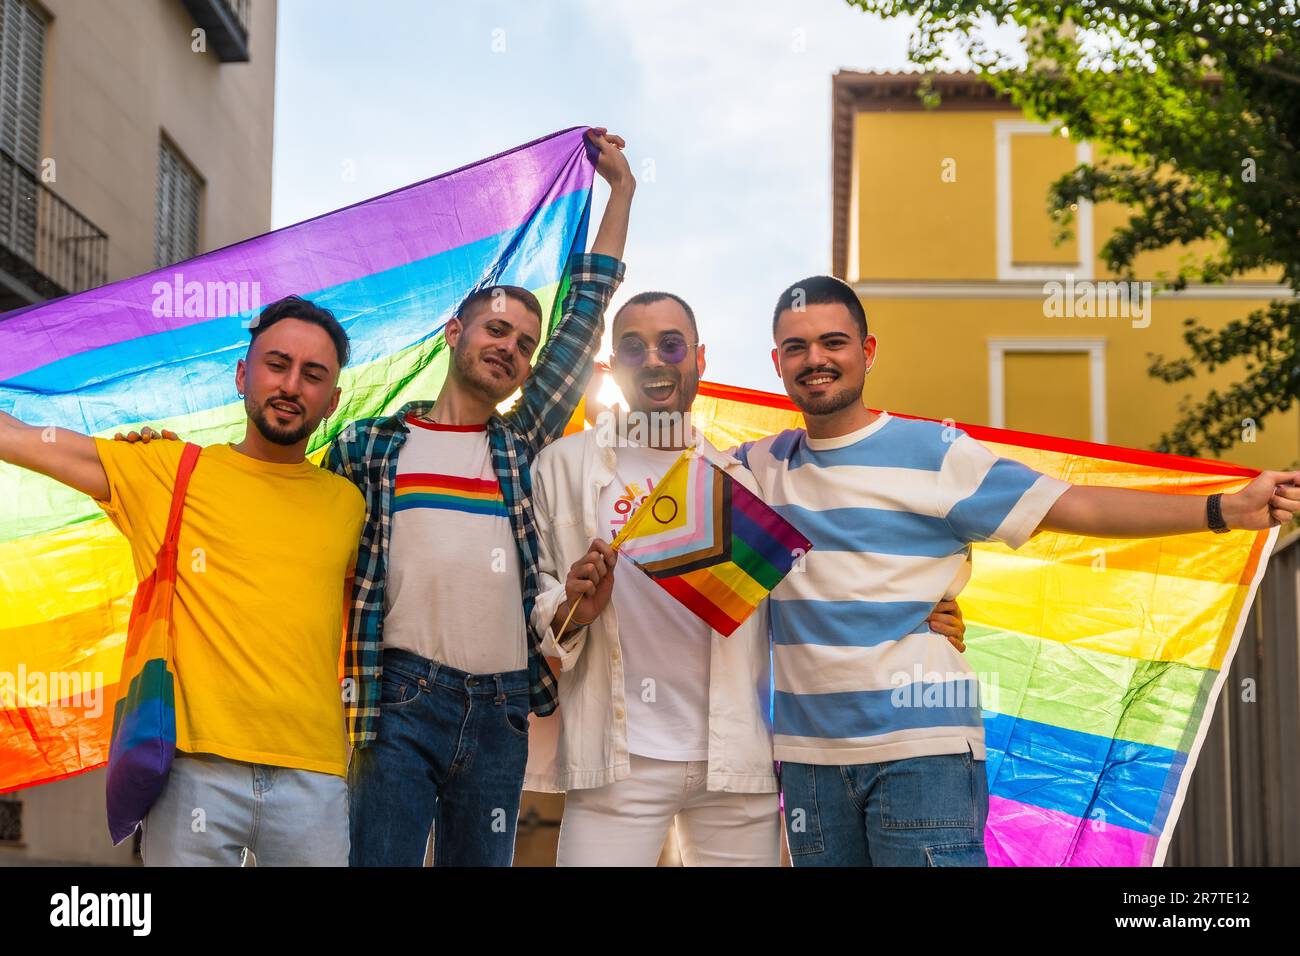 Porträt von homosexuellen Freunden, die auf einer Schwulenparty in der Stadt sind, Vielfalt junger Menschen, Demonstration mit Regenbogenflaggen, lgbt-Konzept Stockfoto